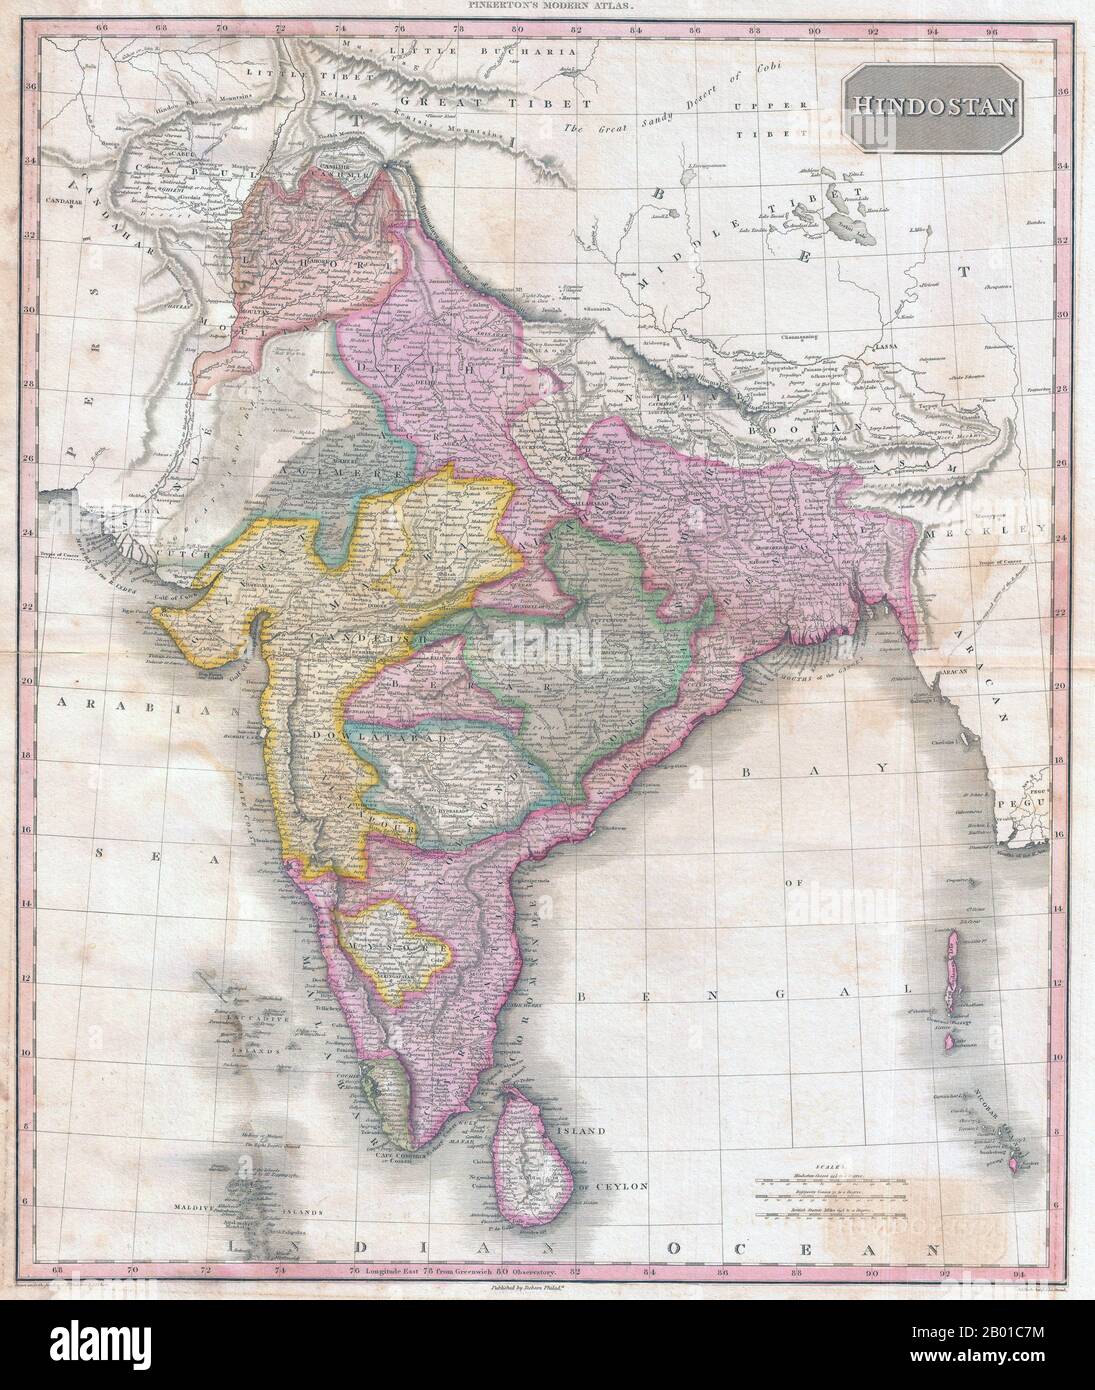 Inde/Asie du Sud: Carte de l'Hindostan montrant le Raj britannique de John Pinkerton (17 février 1758 - 10 mars 1826), c. 1818. Carte de Hindostan de l'Atlas moderne de Pinkerton, début du 19th siècle. Il couvre le sous-continent du Tibet à Ceylan (Sri Lanka) et de l'embouchure de l'Indus au Royaume de Pegu (Birmanie/Myanmar). La carte code également différentes divisions politiques et États princiers. Banque D'Images